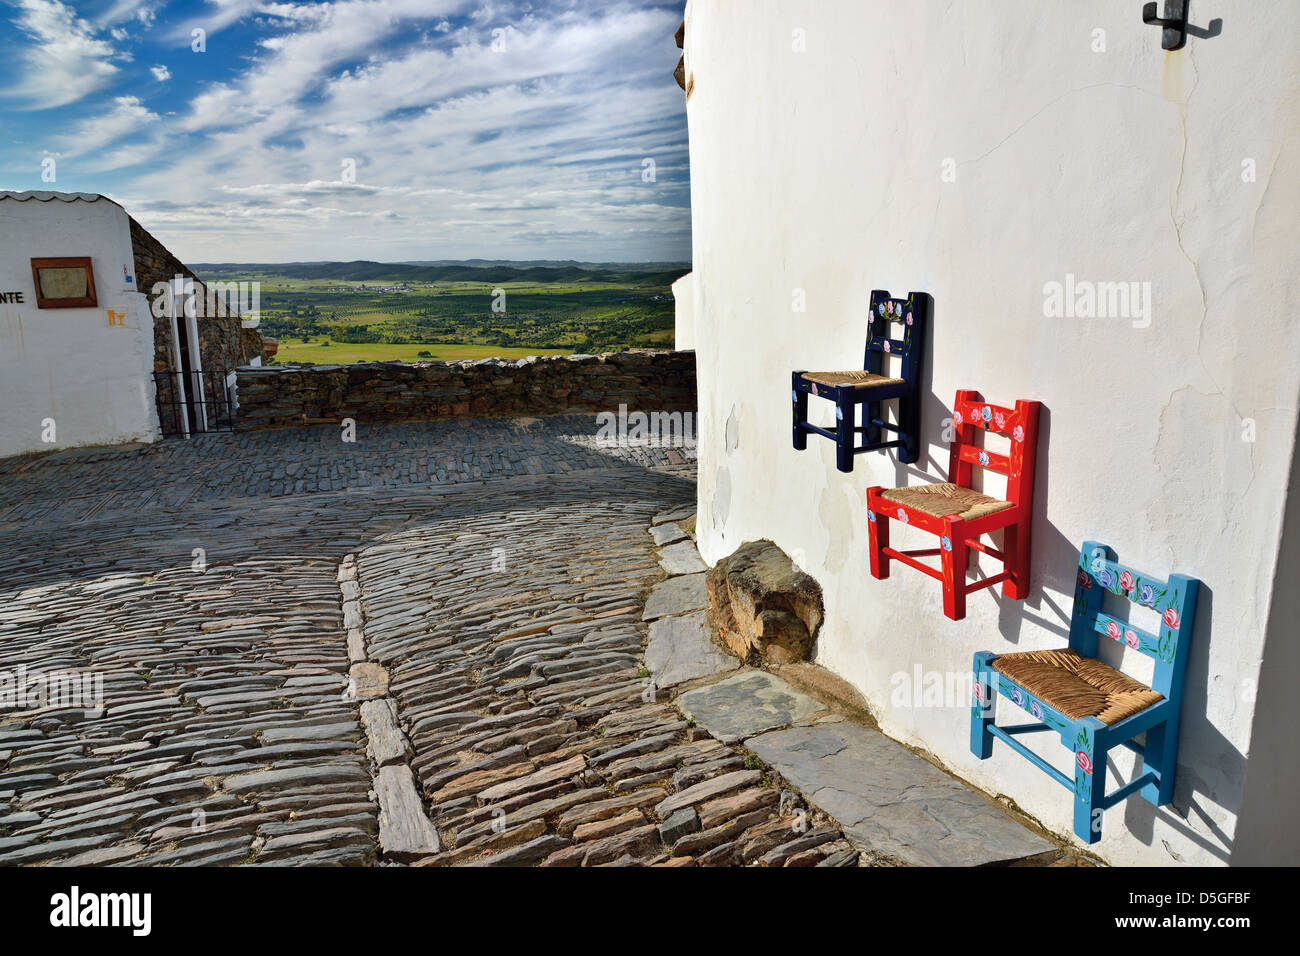 Portogallo Alentejo: fatto a mano sedie in corrispondenza delle pareti del negozio di Souvenir Mufla nel villaggio storico di Monsaraz Foto Stock